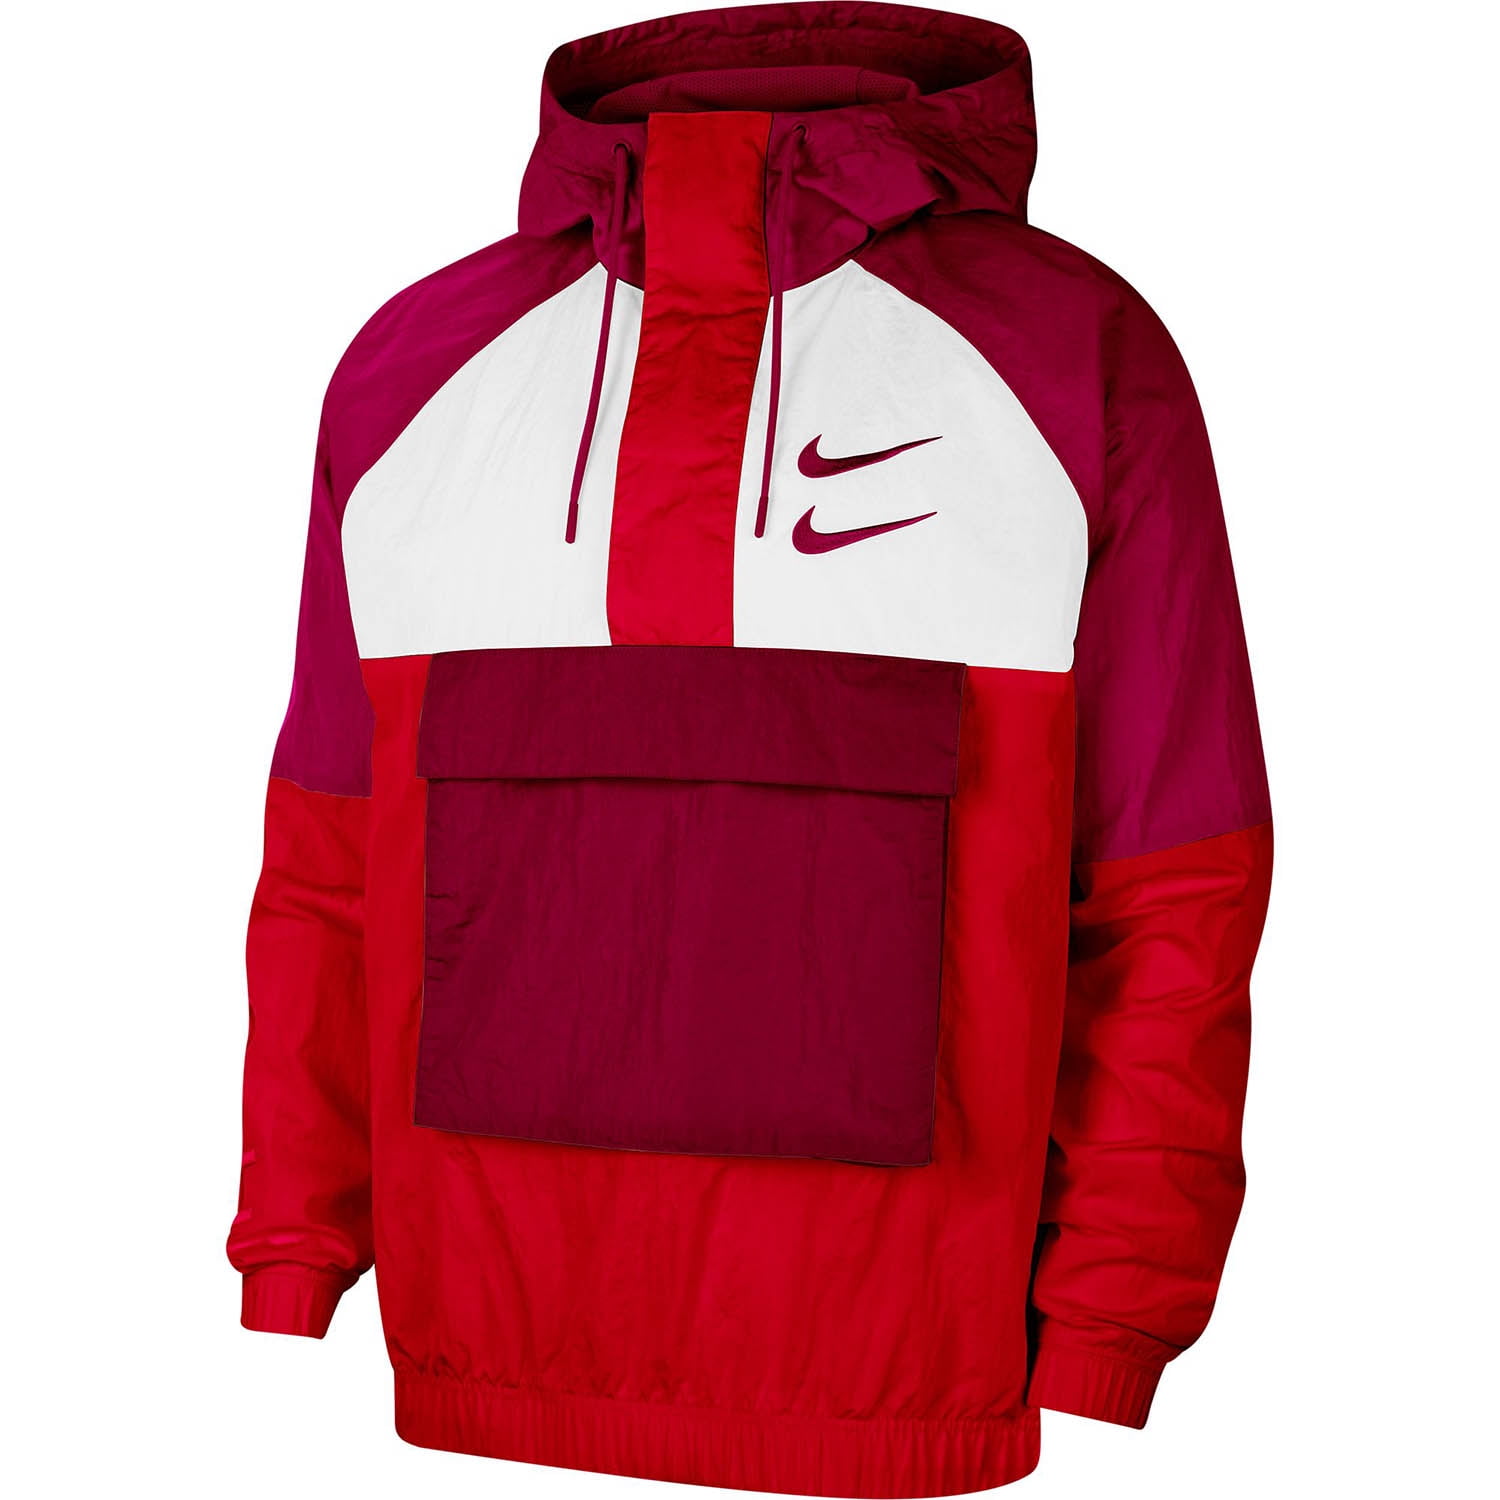 Nike Sportswear Swoosh Woven Windbreaker Men's Jacket cu3885-657 - Walmart.com